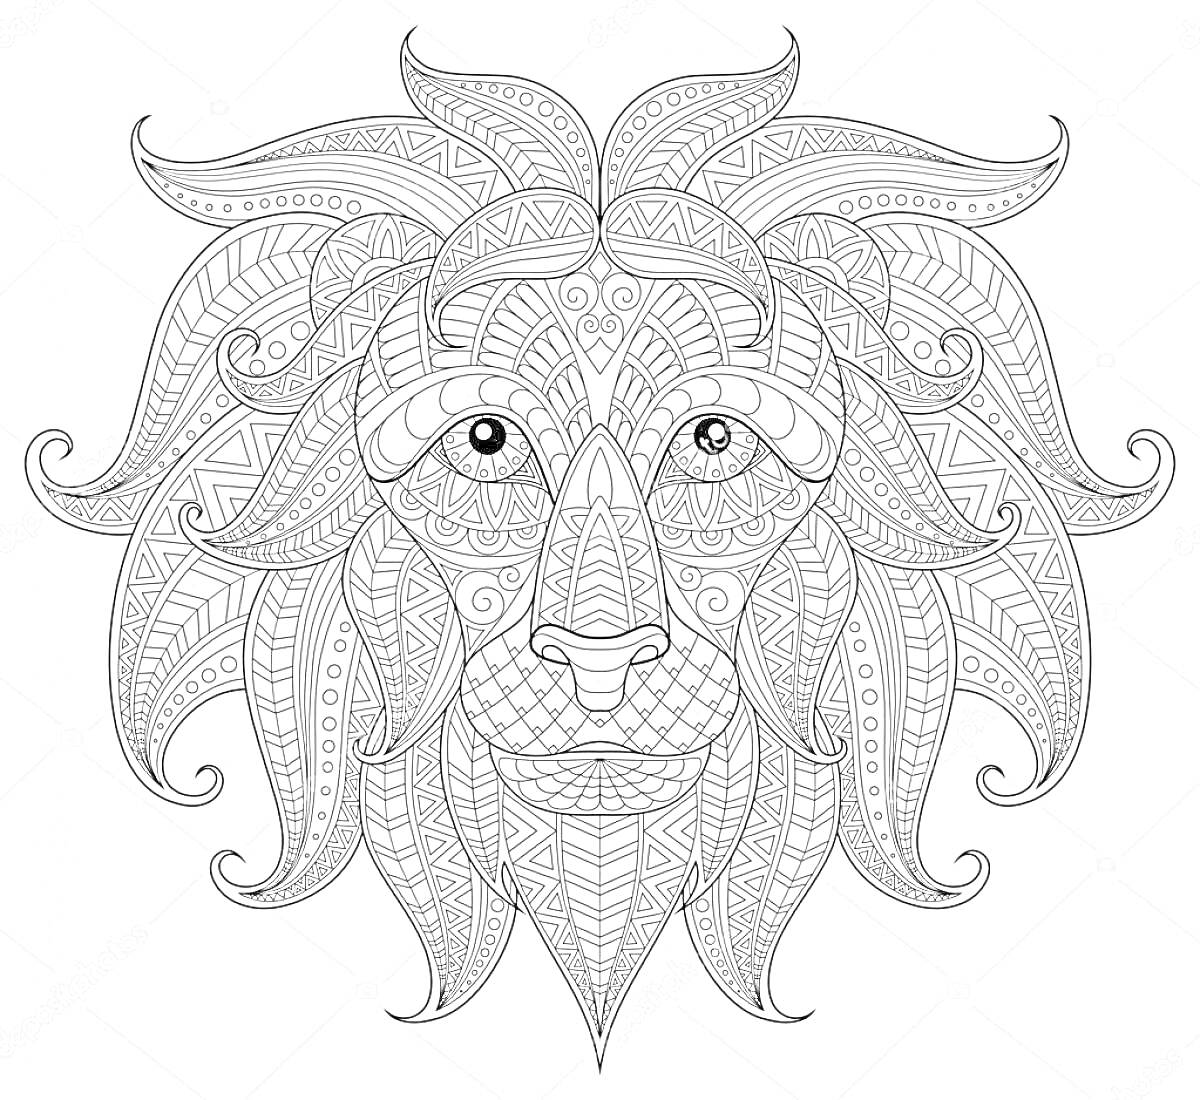 Антистресс раскраска с изображением льва, украшенного декоративными узорами и множеством мелких деталей